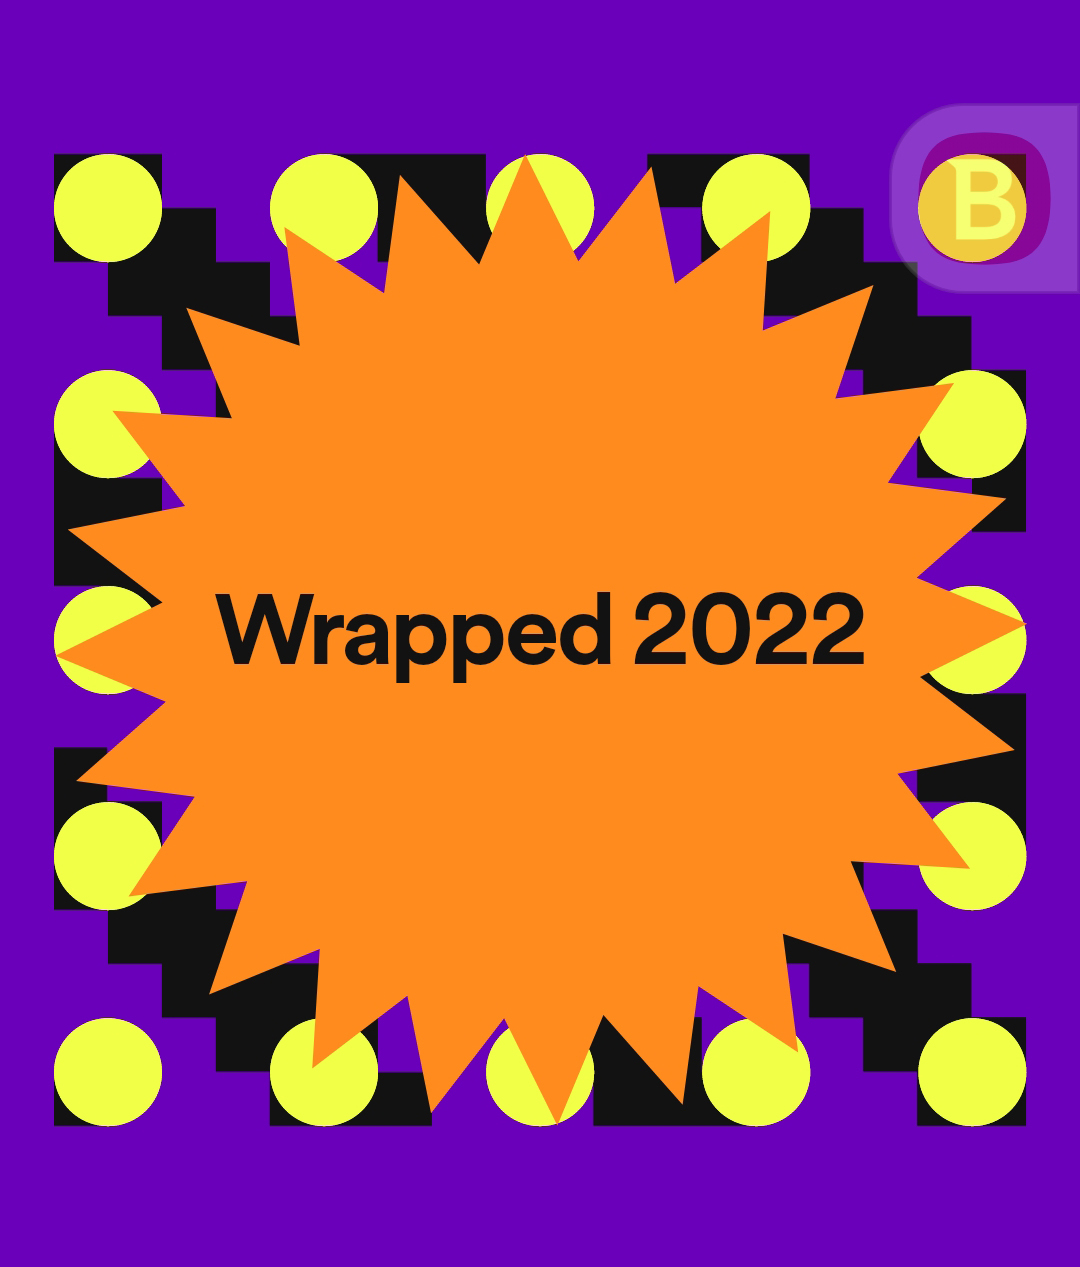 Wrapped 2022 de la aplicación Spotify.